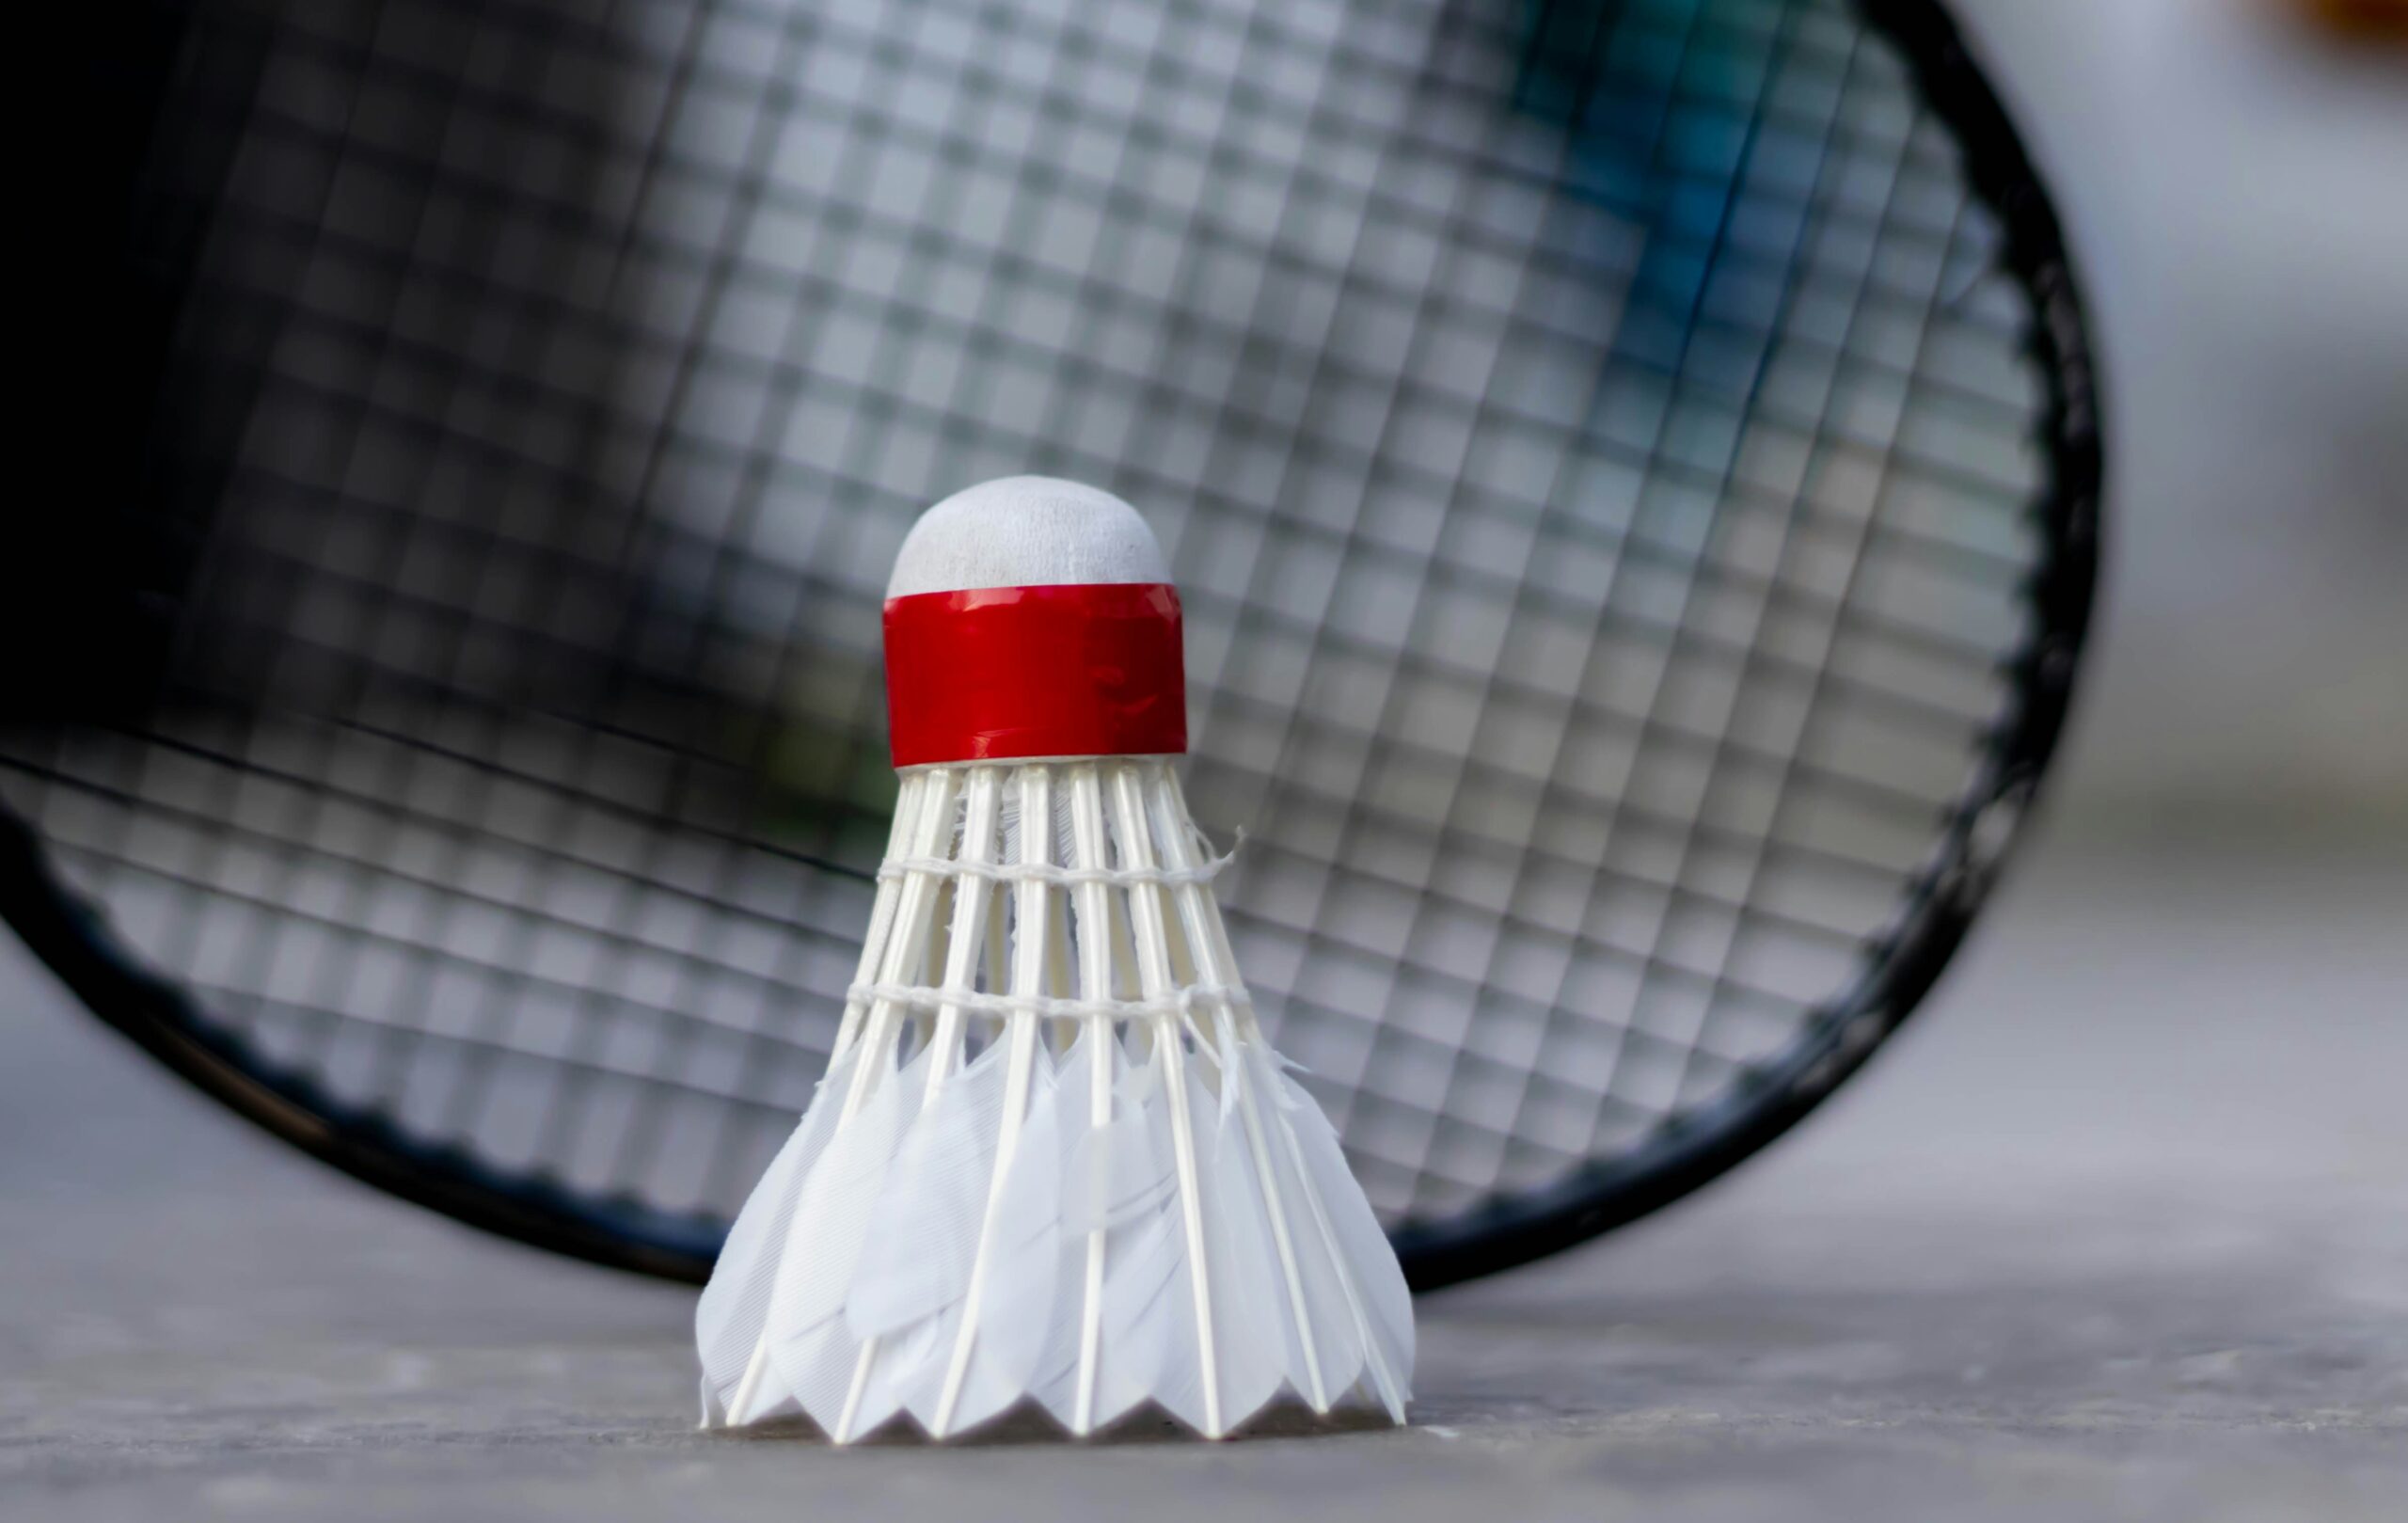 découvrez les règles du badminton et apprenez les bases de ce sport dynamique. trouvez des conseils et des informations utiles sur les règles de jeu, l'équipement et les techniques de badminton.